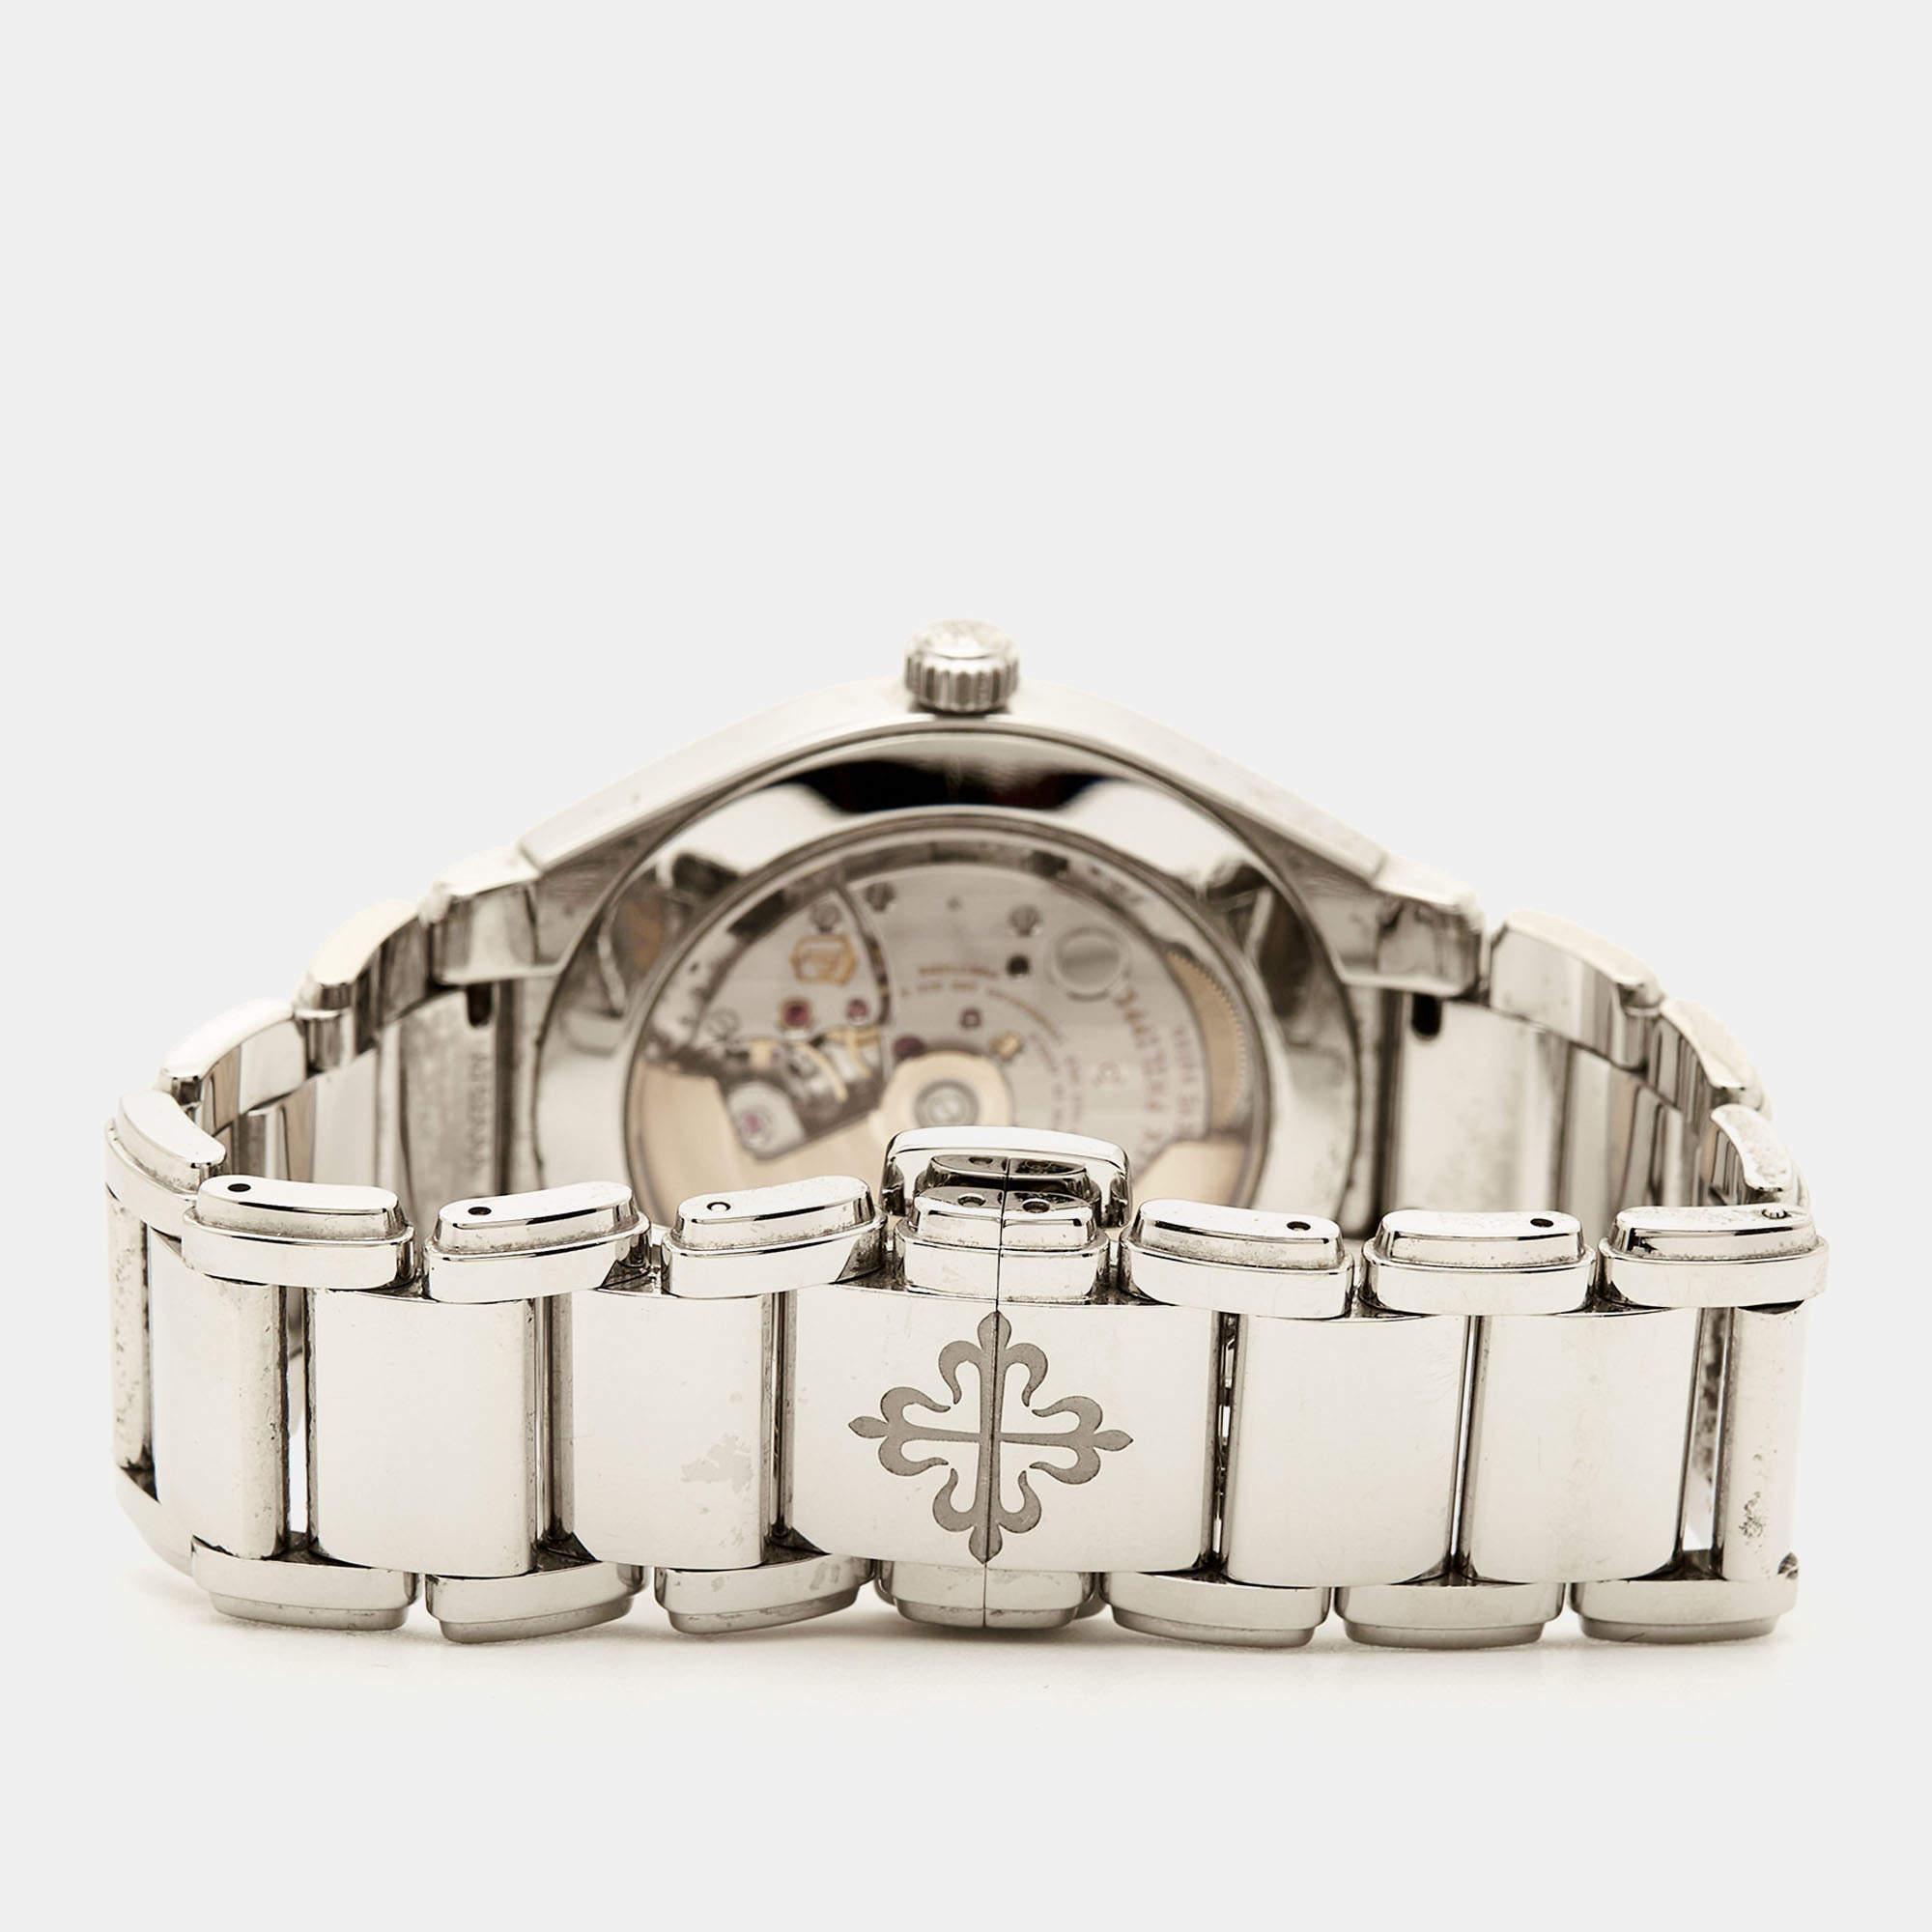 Conçue selon les codes de l'horlogerie classique, cette montre-bracelet pour femme de Patek Philippe est un excellent choix si vous êtes à la recherche d'un garde-temps digne d'un investissement. Elle est issue de la ligne Twenty-4 - une collection